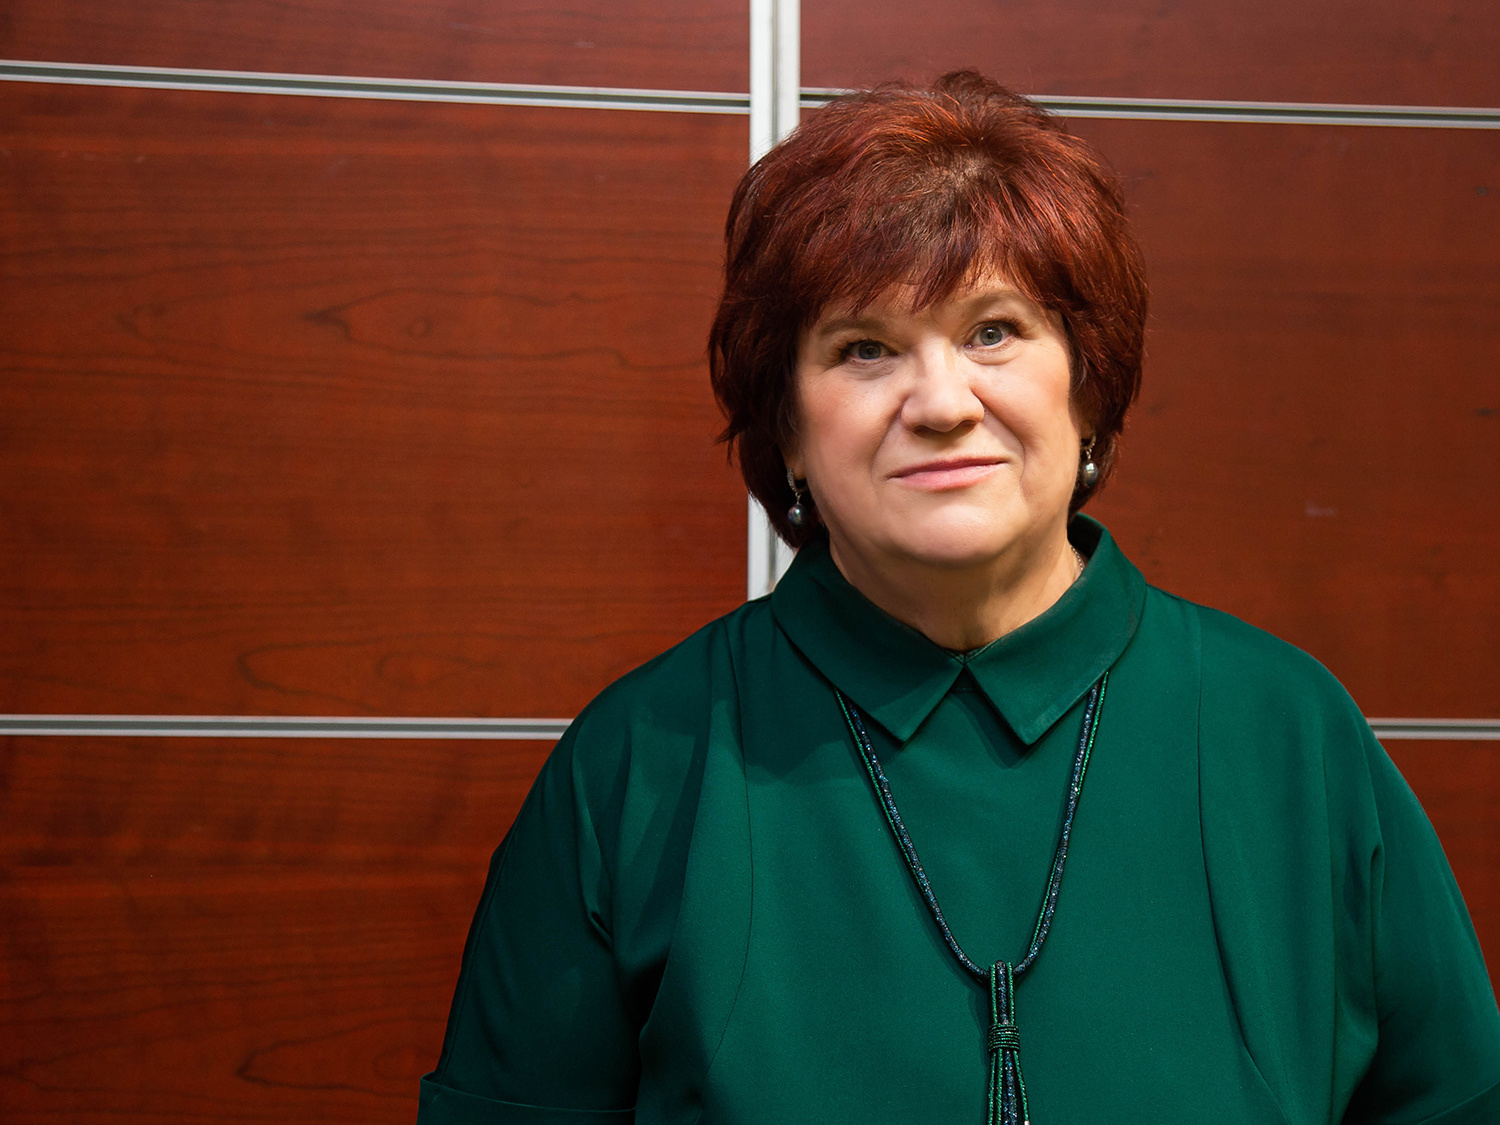 Микробиолог Анна Ивановна Калмыкова, доктор биологических наук, профессор НГАУ